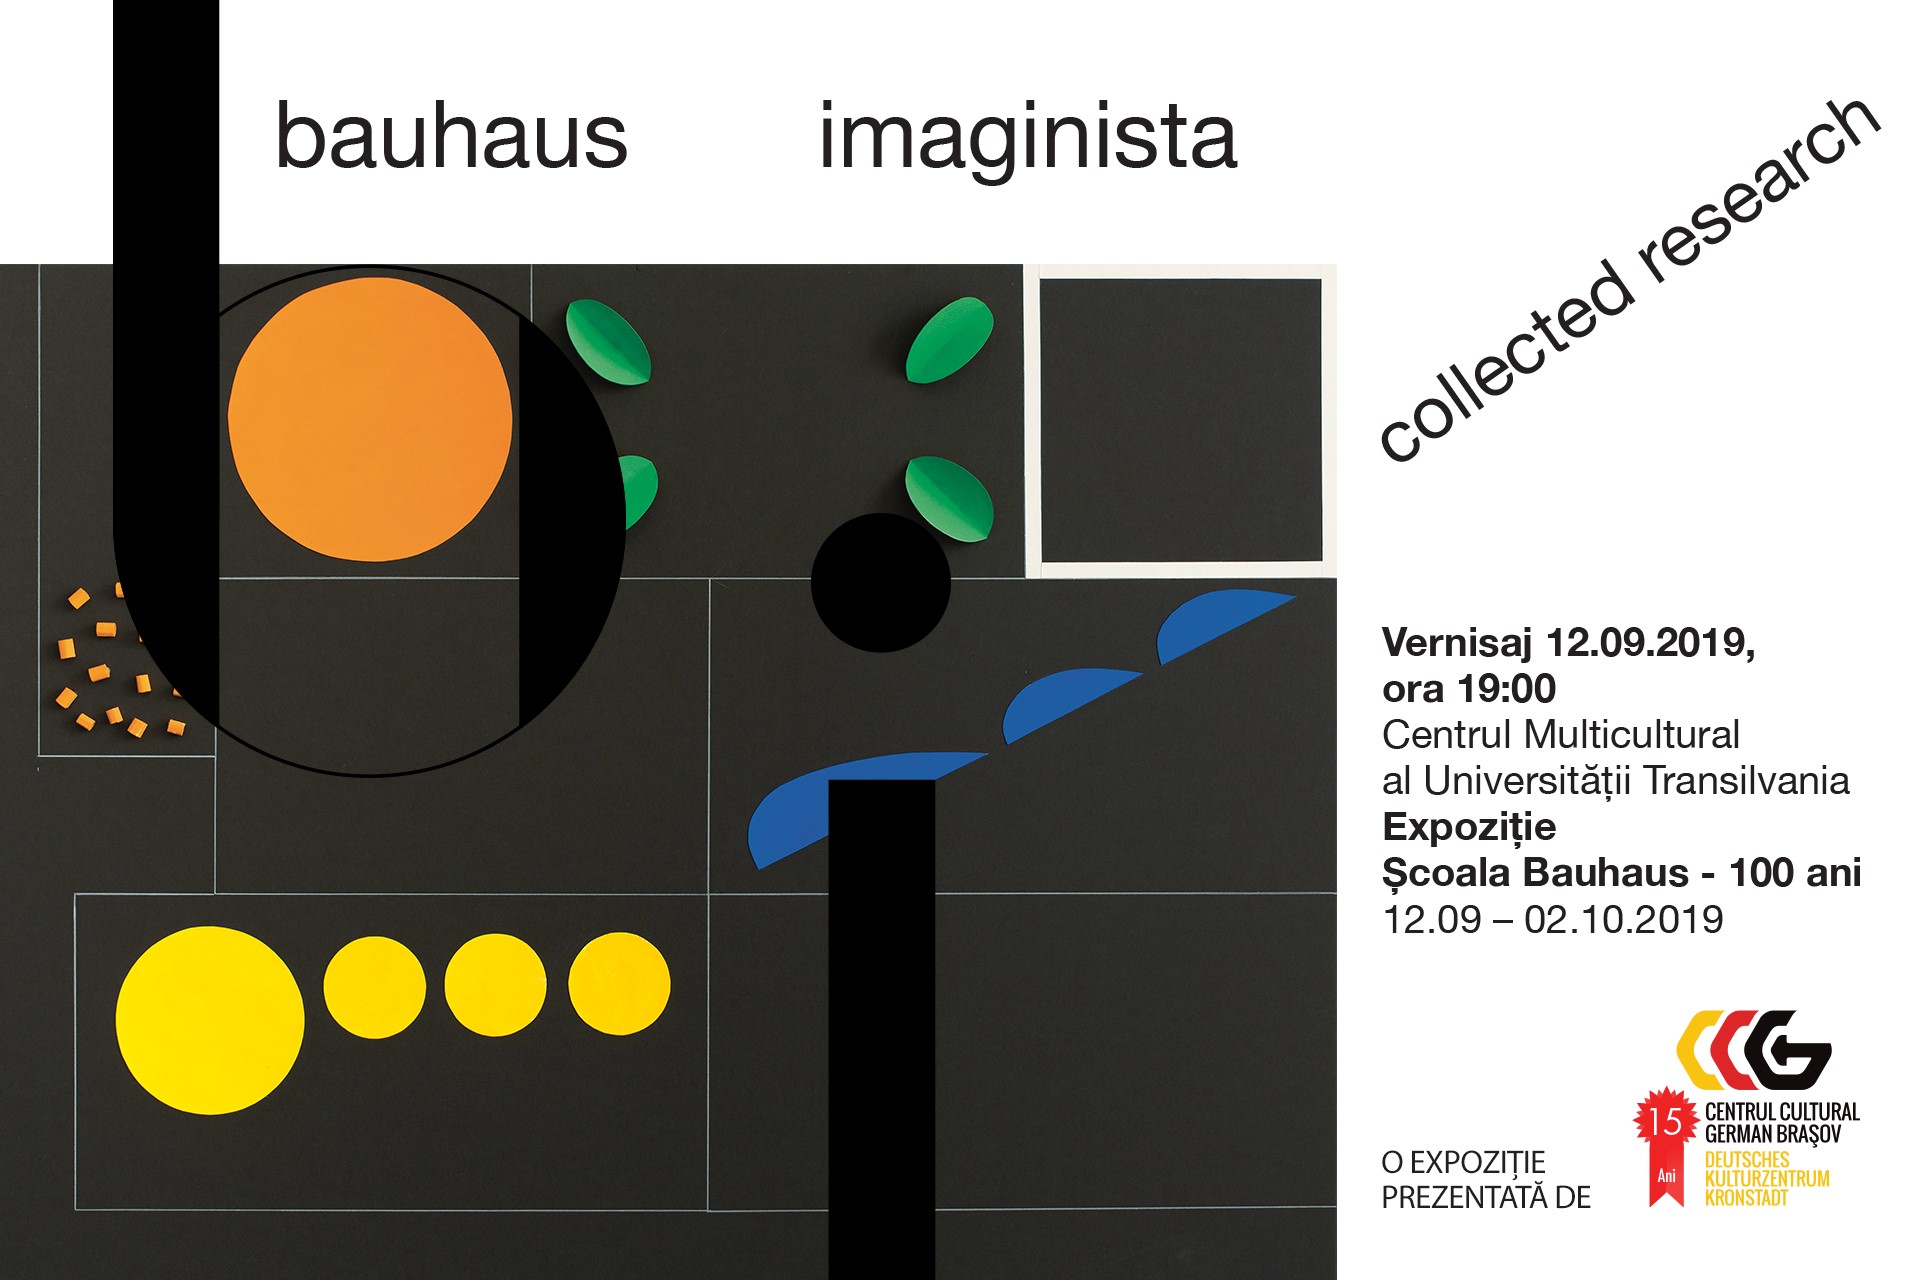 Bauhaus imaginista